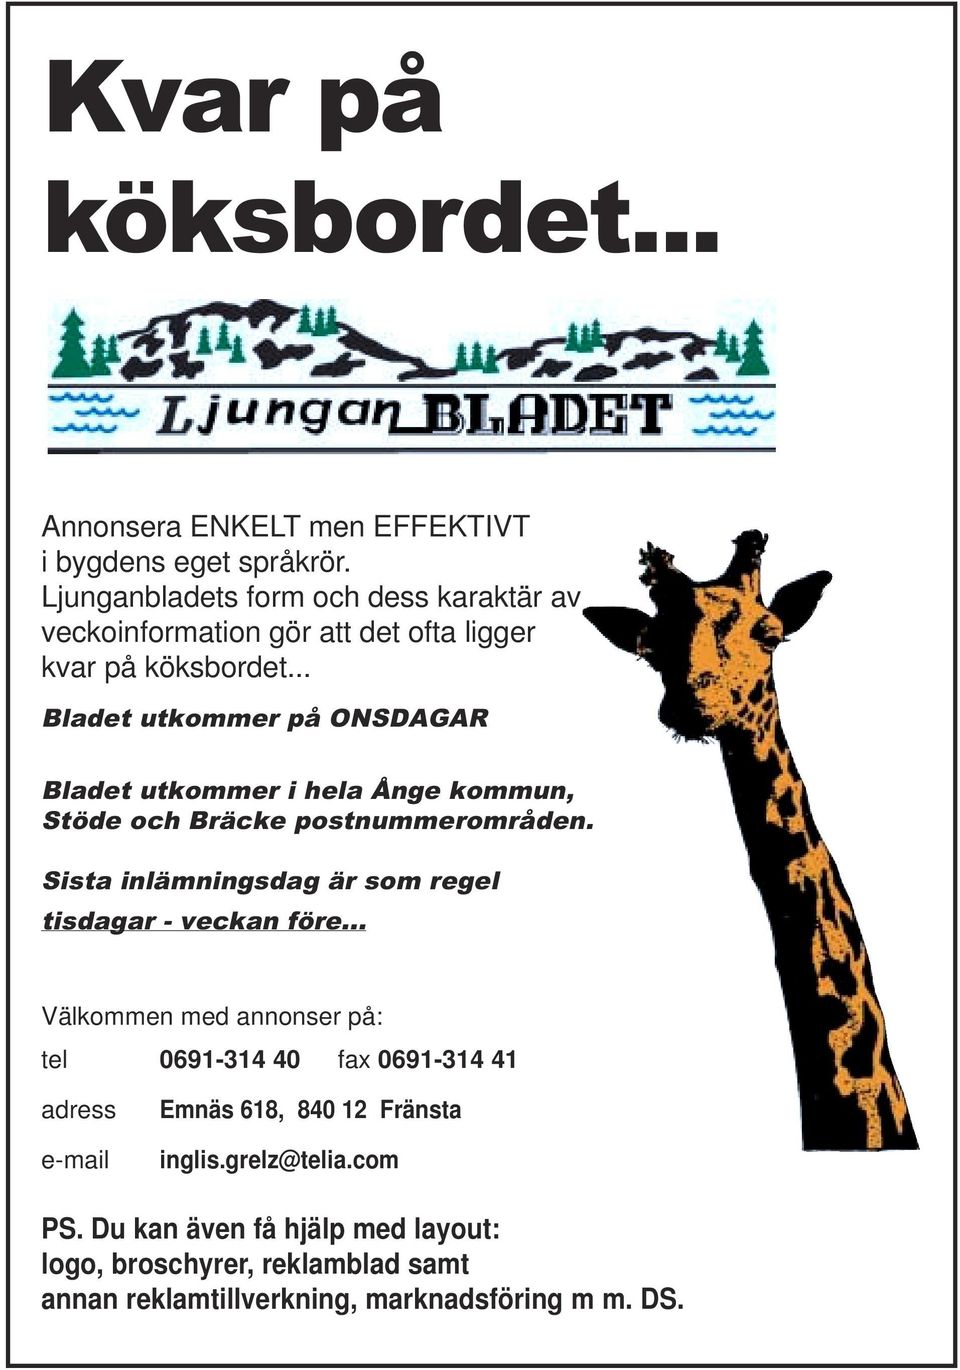 .. Bladet utkommer på ONSDAGAR Bladet utkommer i hela Ånge kommun, Stöde och Bräcke postnummerområden.